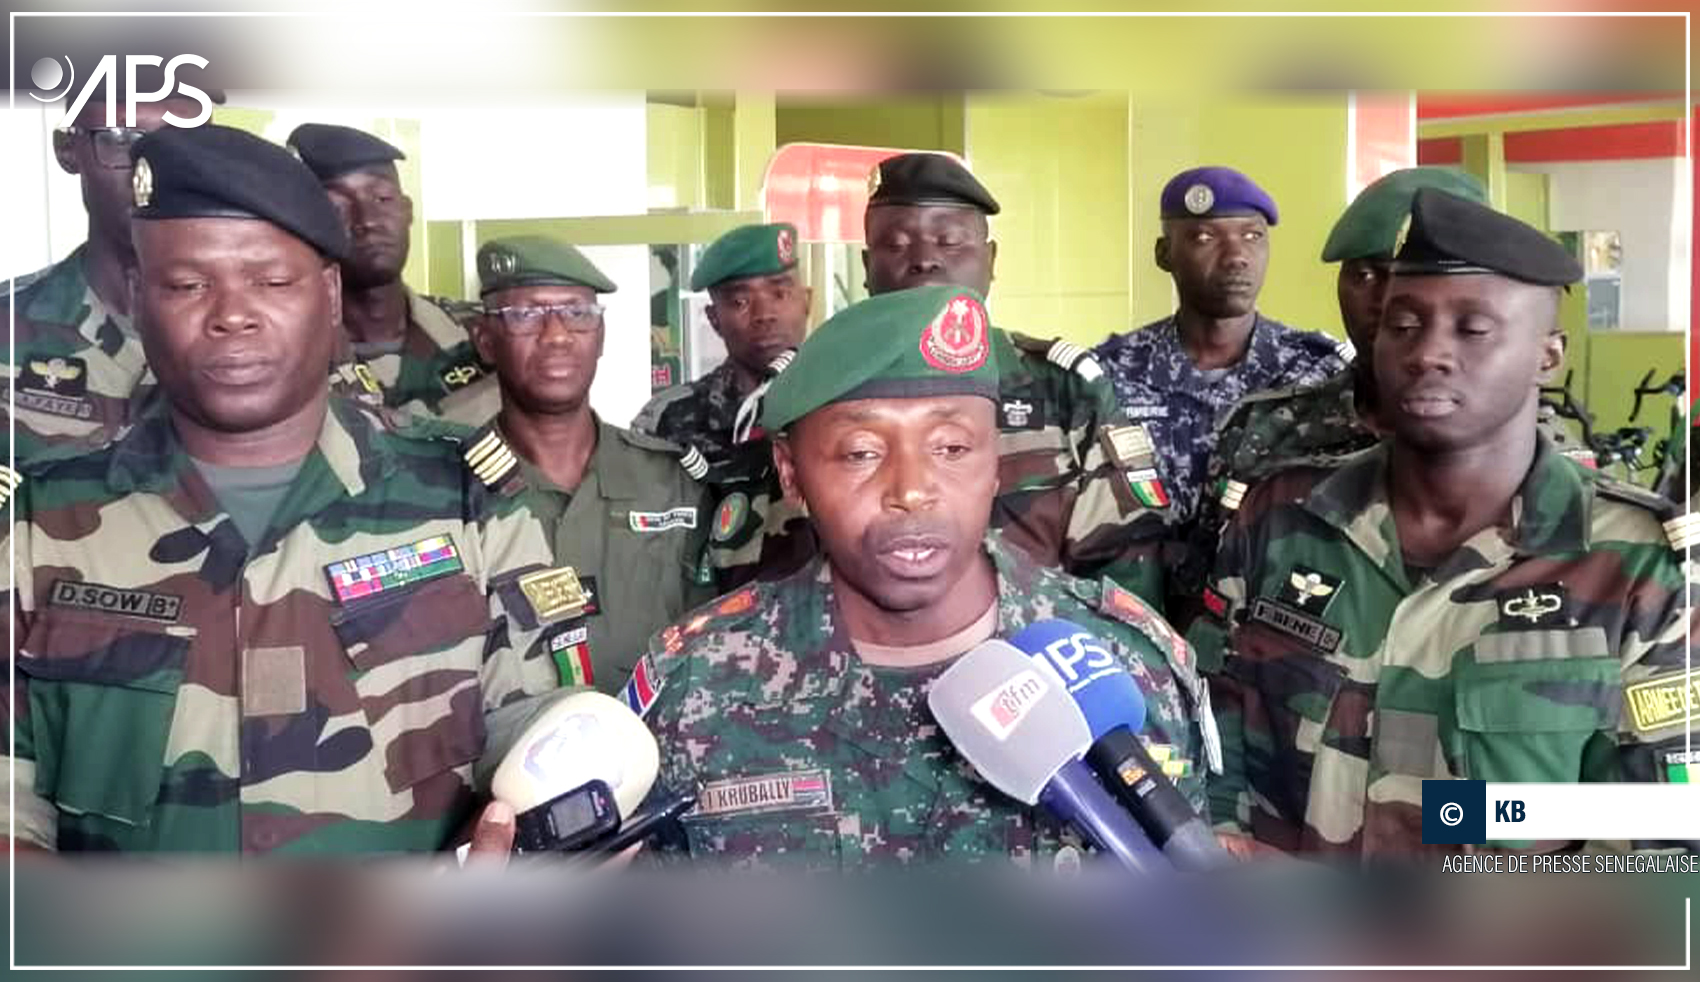 Le Sénégal et la Gambie, ”un  seul peuple indivisible”, selon un officier gambien